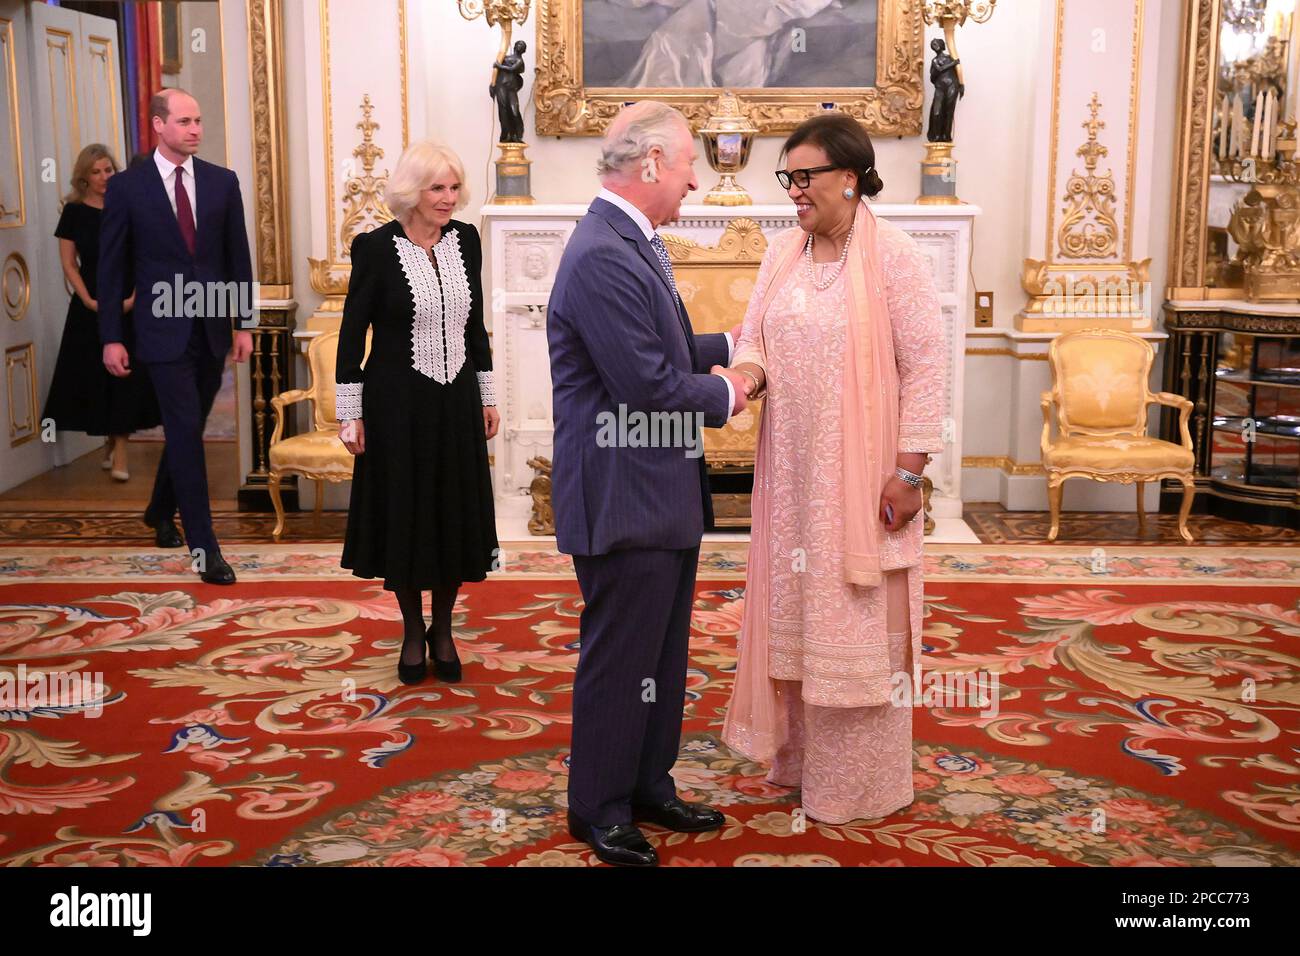 König Karl III. (Zweite rechts) schüttelt sich die Hand mit der Commonwealth-Generalsekretärin Patricia Scotland (rechts), während der Prinz von Wales (links) und die Queen Consort (zweite links) bei der jährlichen Commonwealth Day-Feier im Buckingham Palace in London ankommen. Foto: Montag, 13. März 2023. Stockfoto